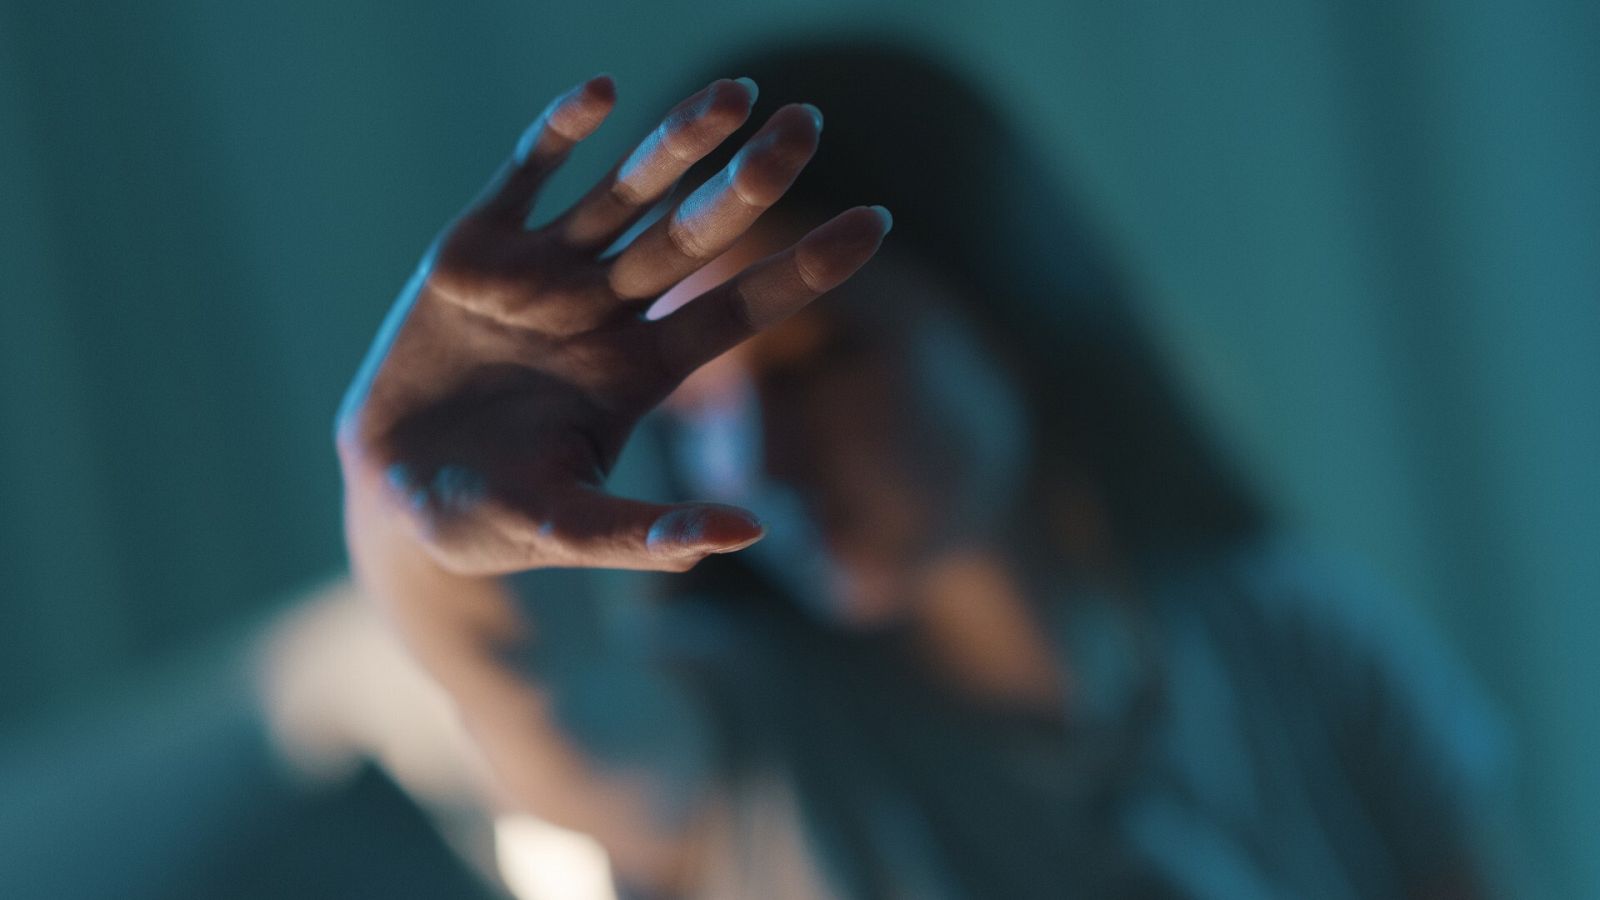 Una mujer levanta la mano en un gesto contra la violencia machista